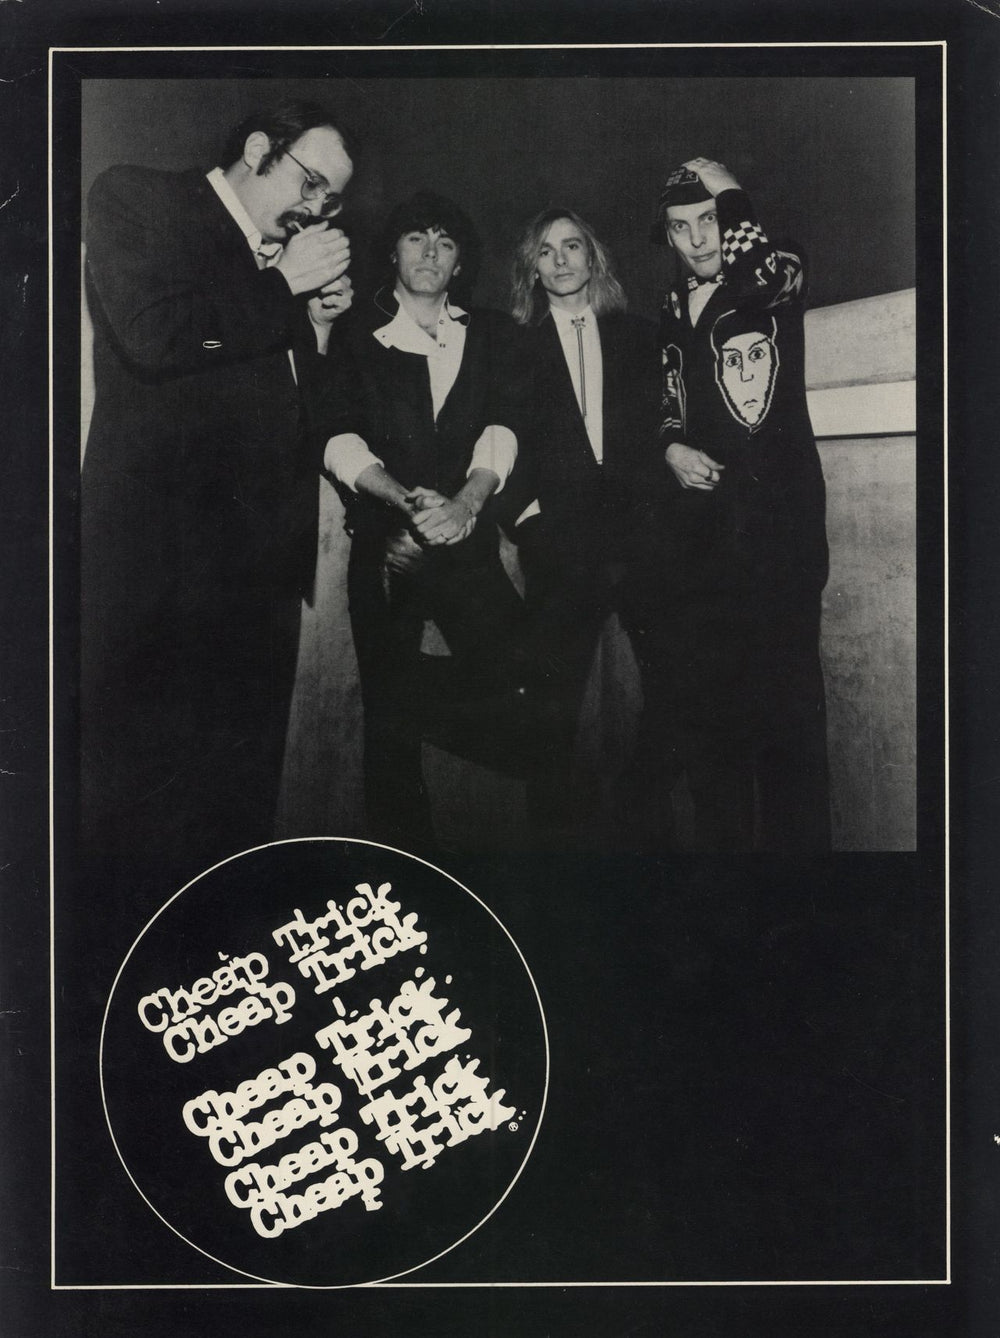 Cheap Trick 1979 World Tour + 2 ticket stubs UK tour programme TOUR PROGRAM